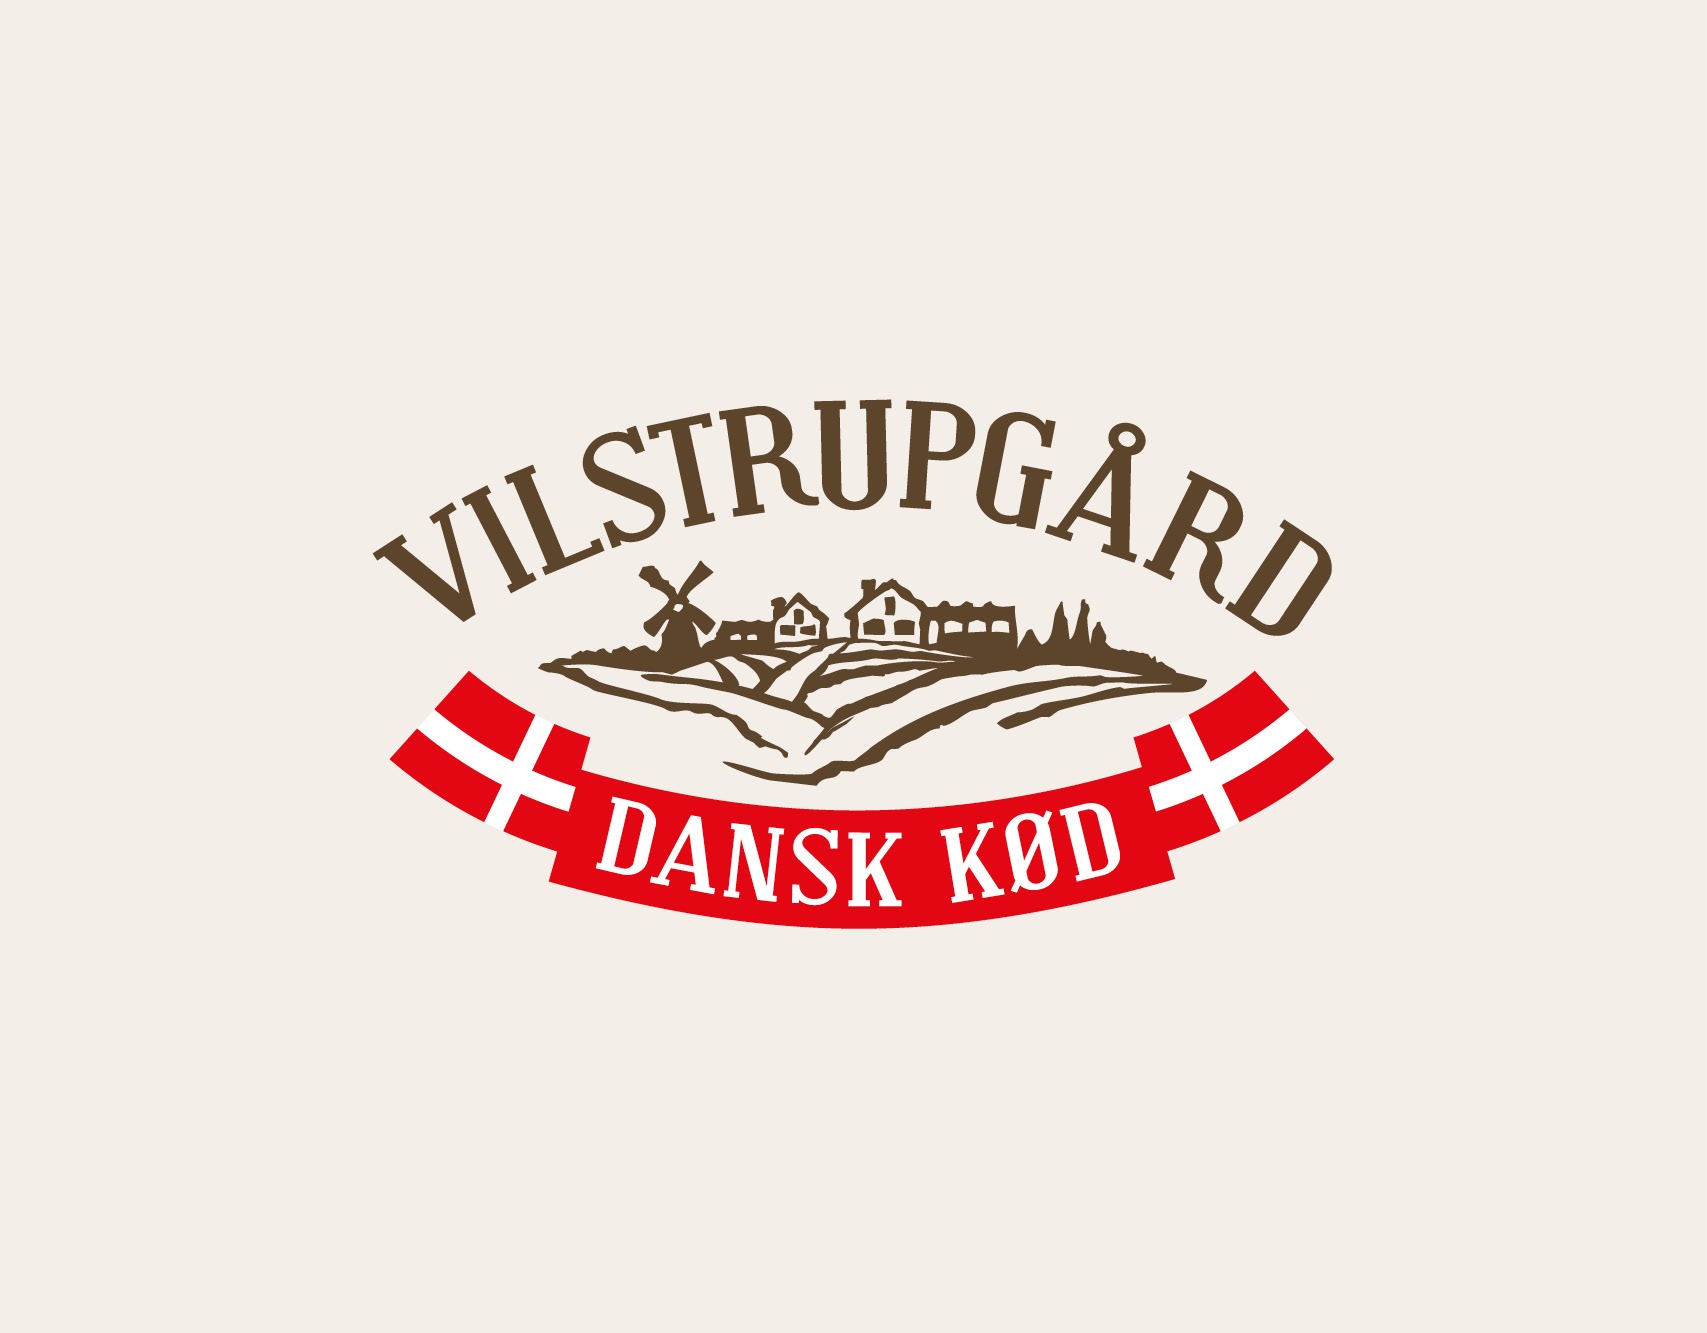 Vilstrupgaard visuel identitet logo